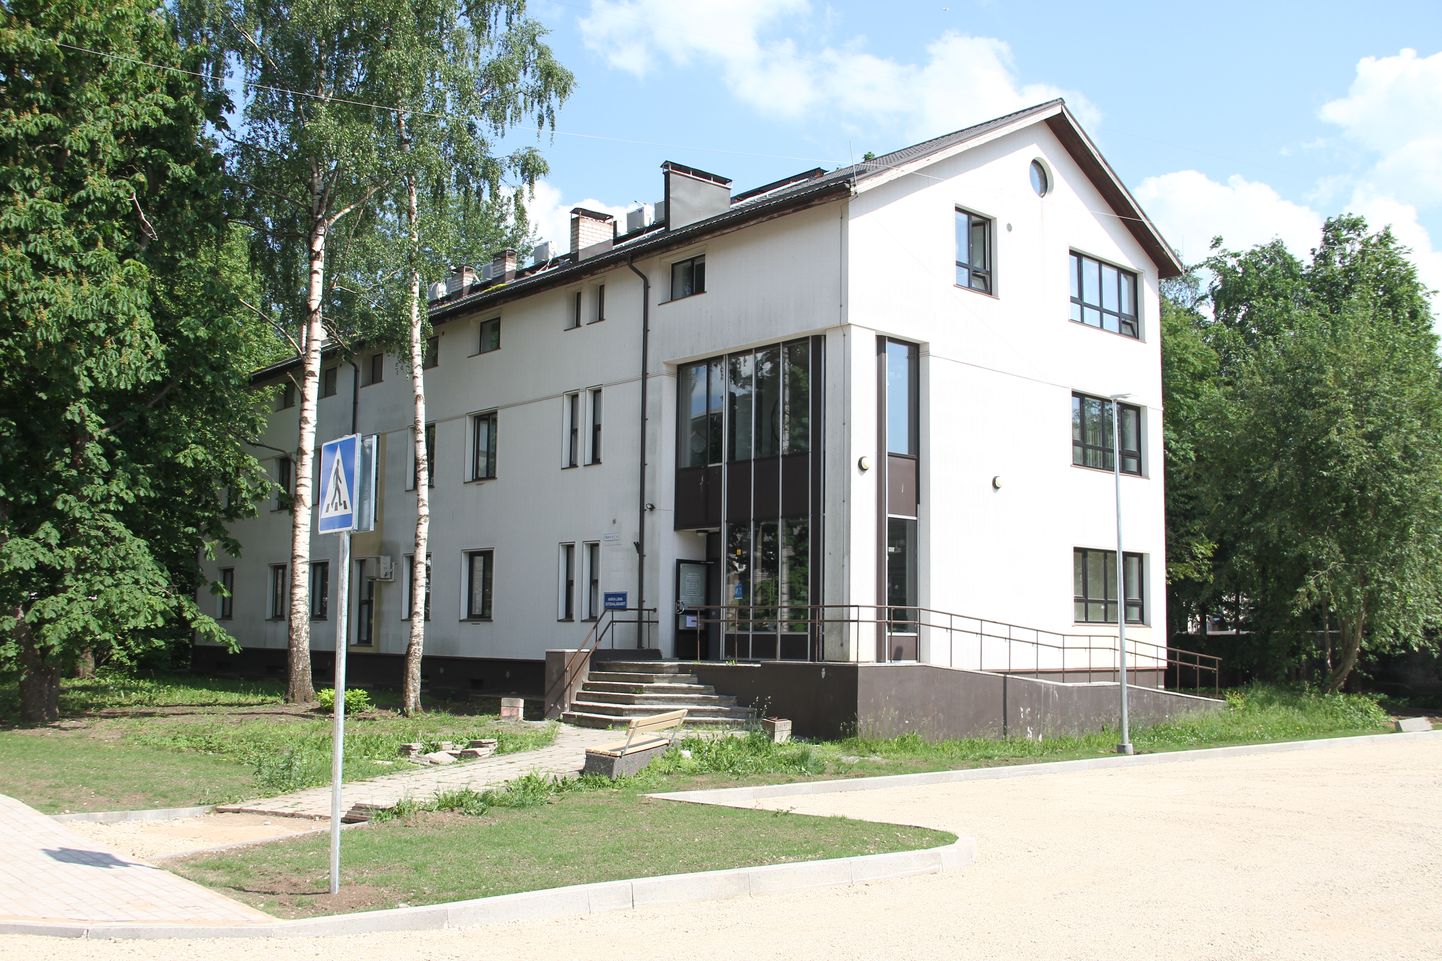 Департамент социальной помощи Нарвы работает в здании на ул. Мальми, 5а.